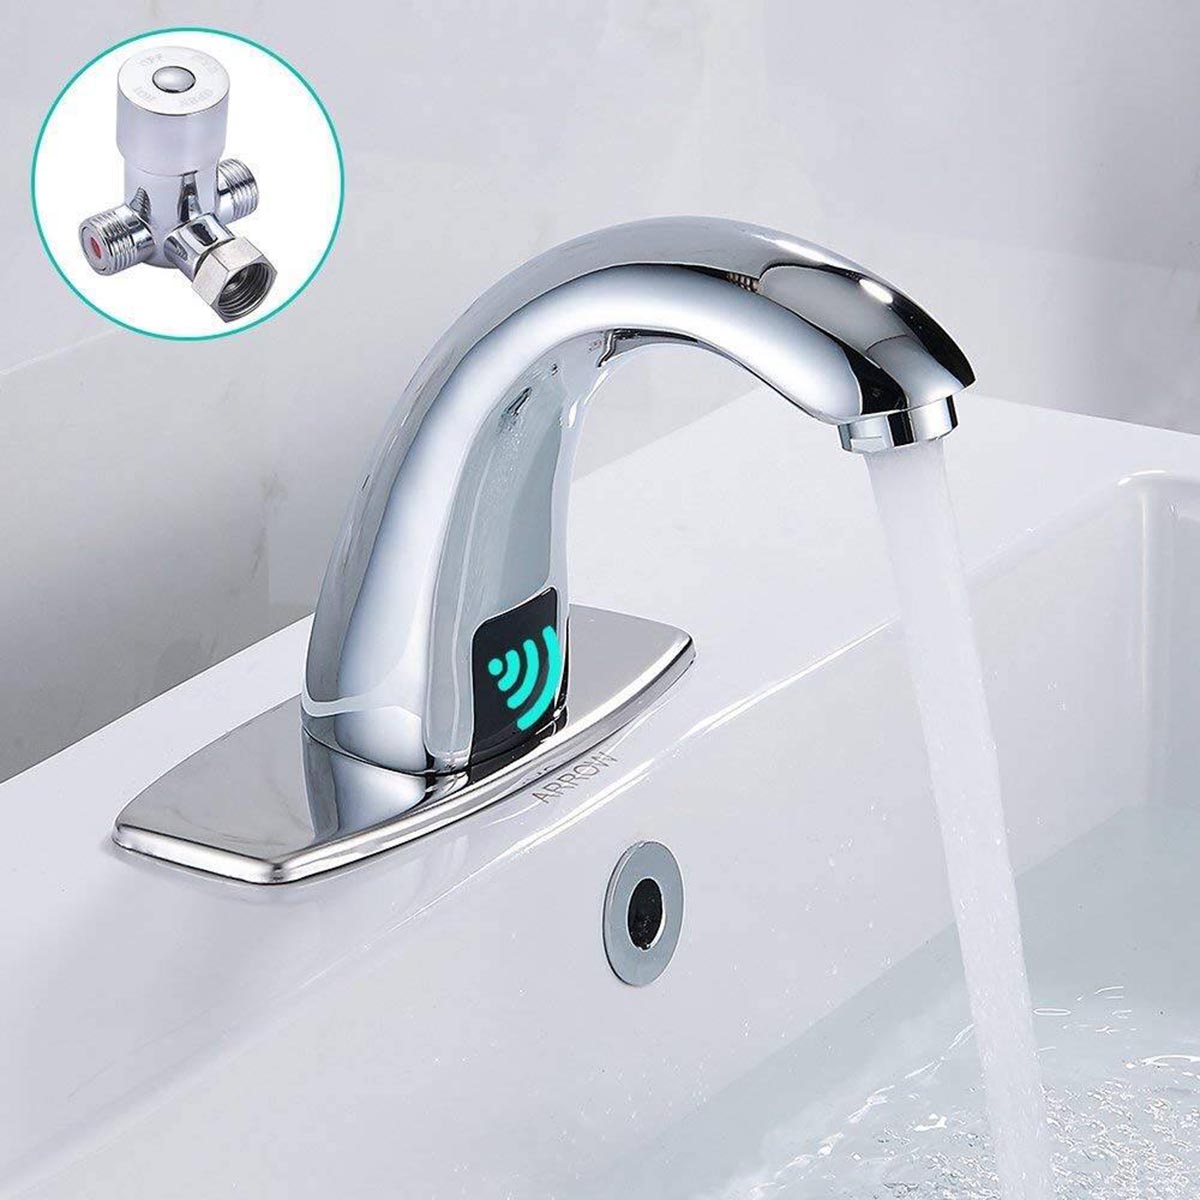 Vòi nước cảm biến đã trở thành một thiết bị nhà tắm thông minh phổ biến. Nguồn: smartlivingvietnam.com